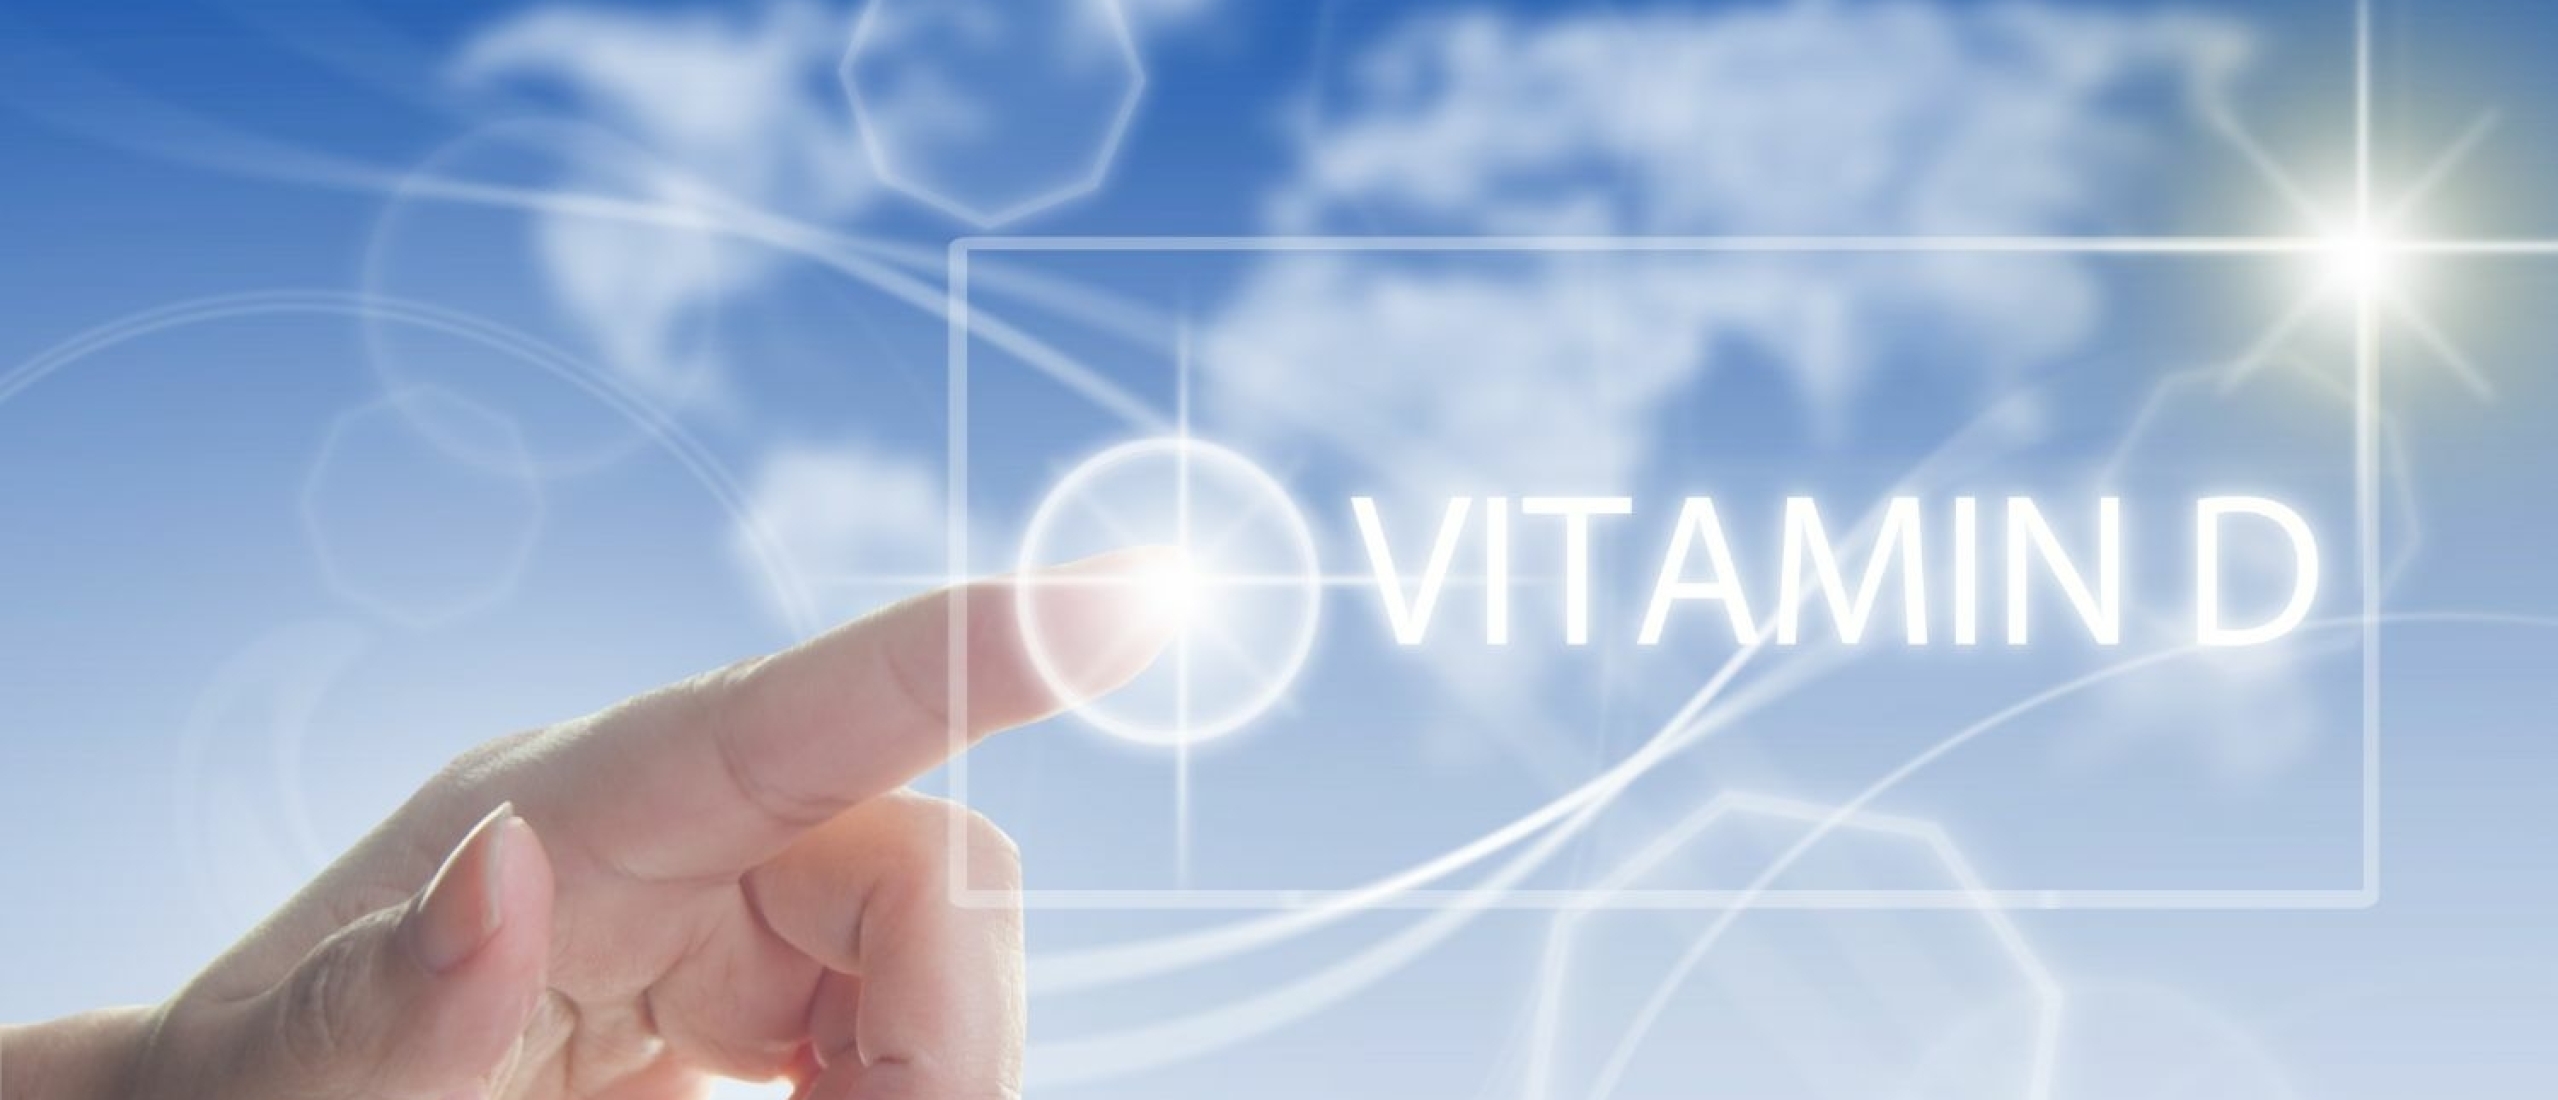 Vitamine D: Wat is het en hoe herken je een tekort?